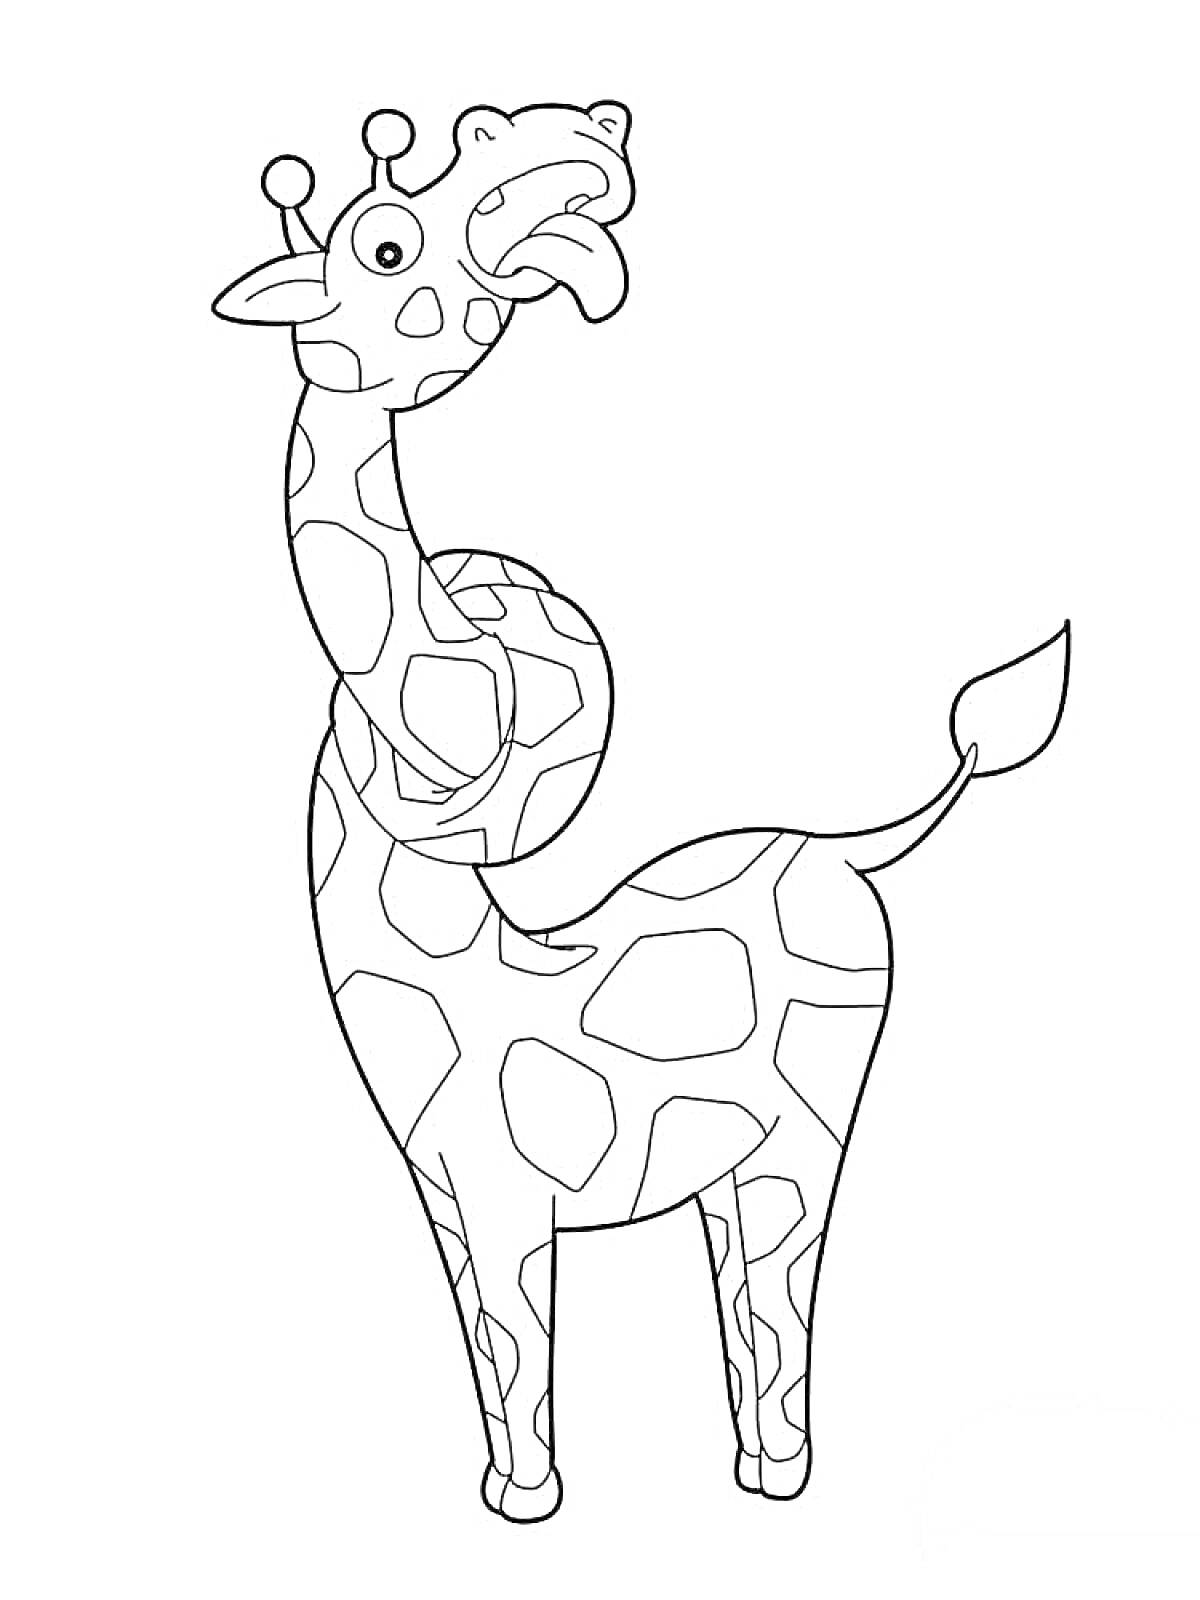 Жираф с длинной шеей, стоящий на копытах, с пятнами на теле, ушами и хвостом